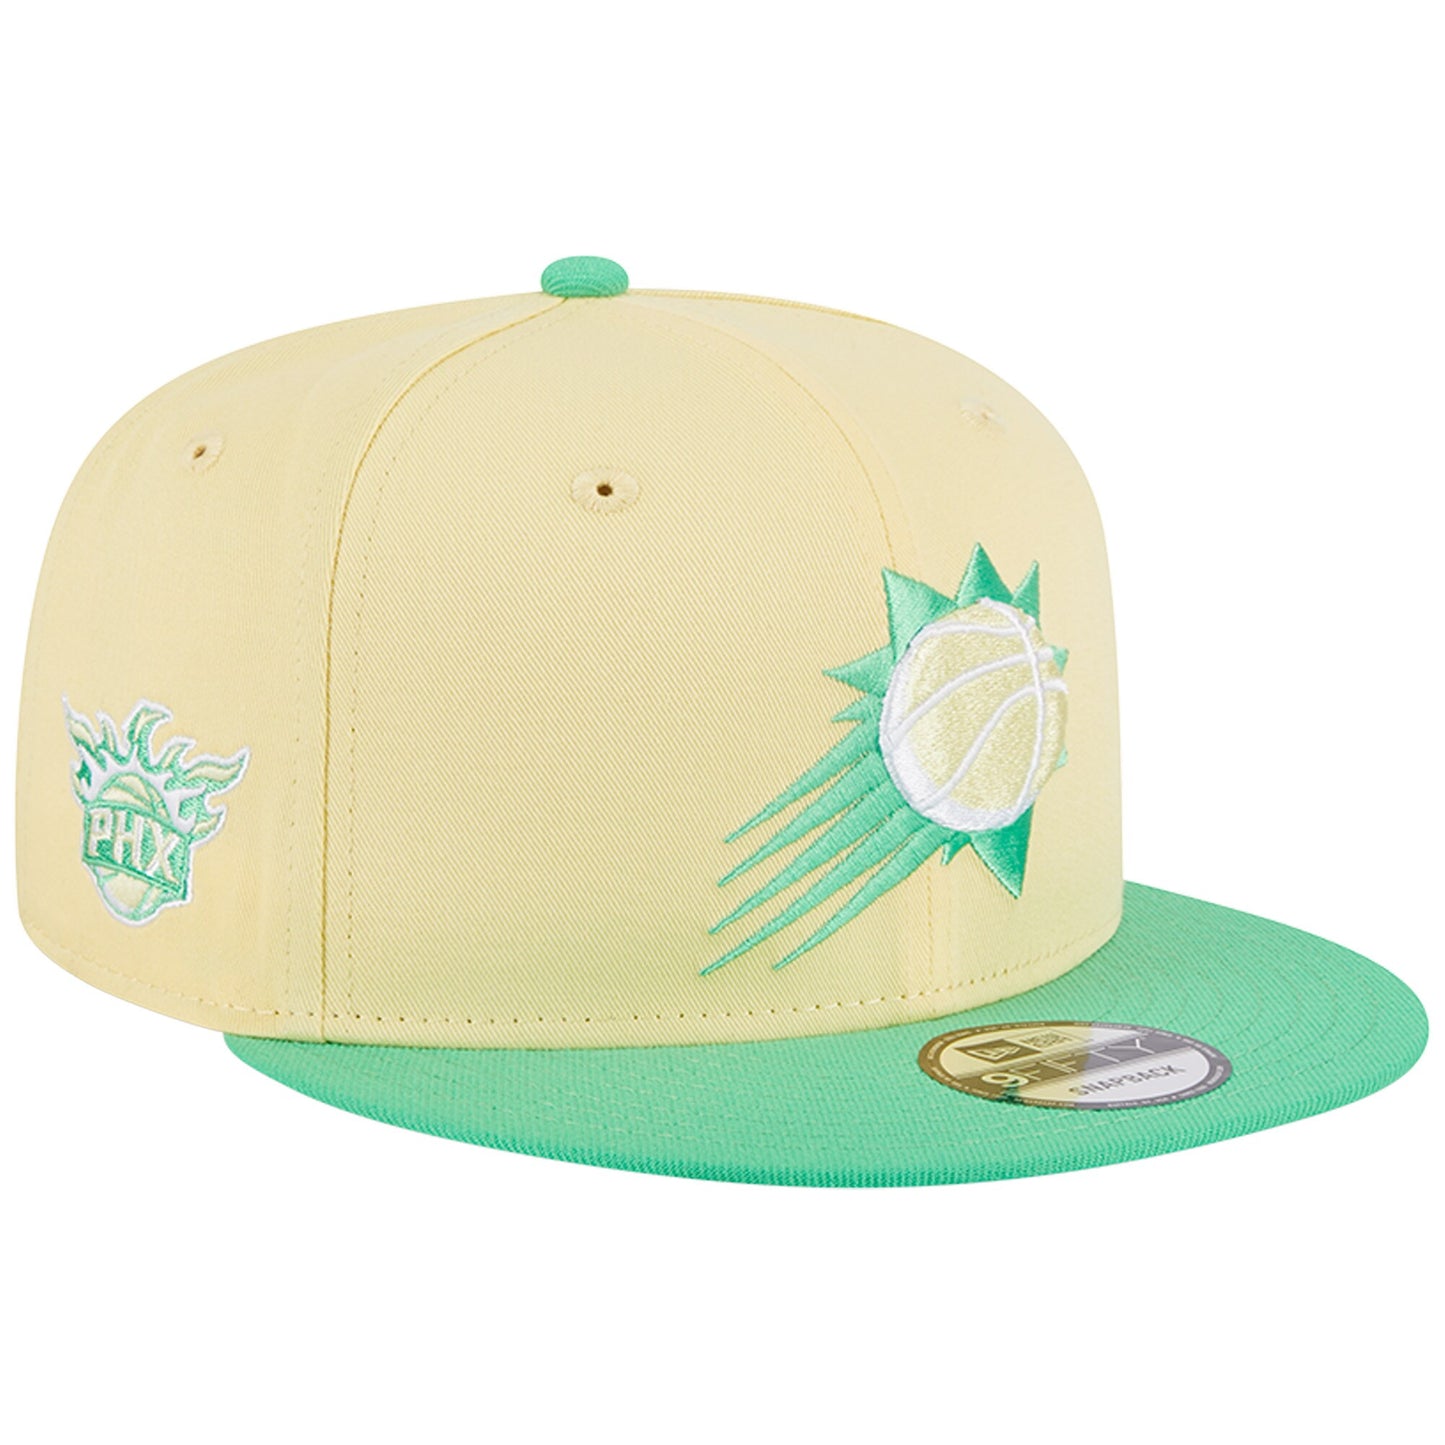 Phoenix Suns New Era 9FIFTY Hat - Yellow/Green